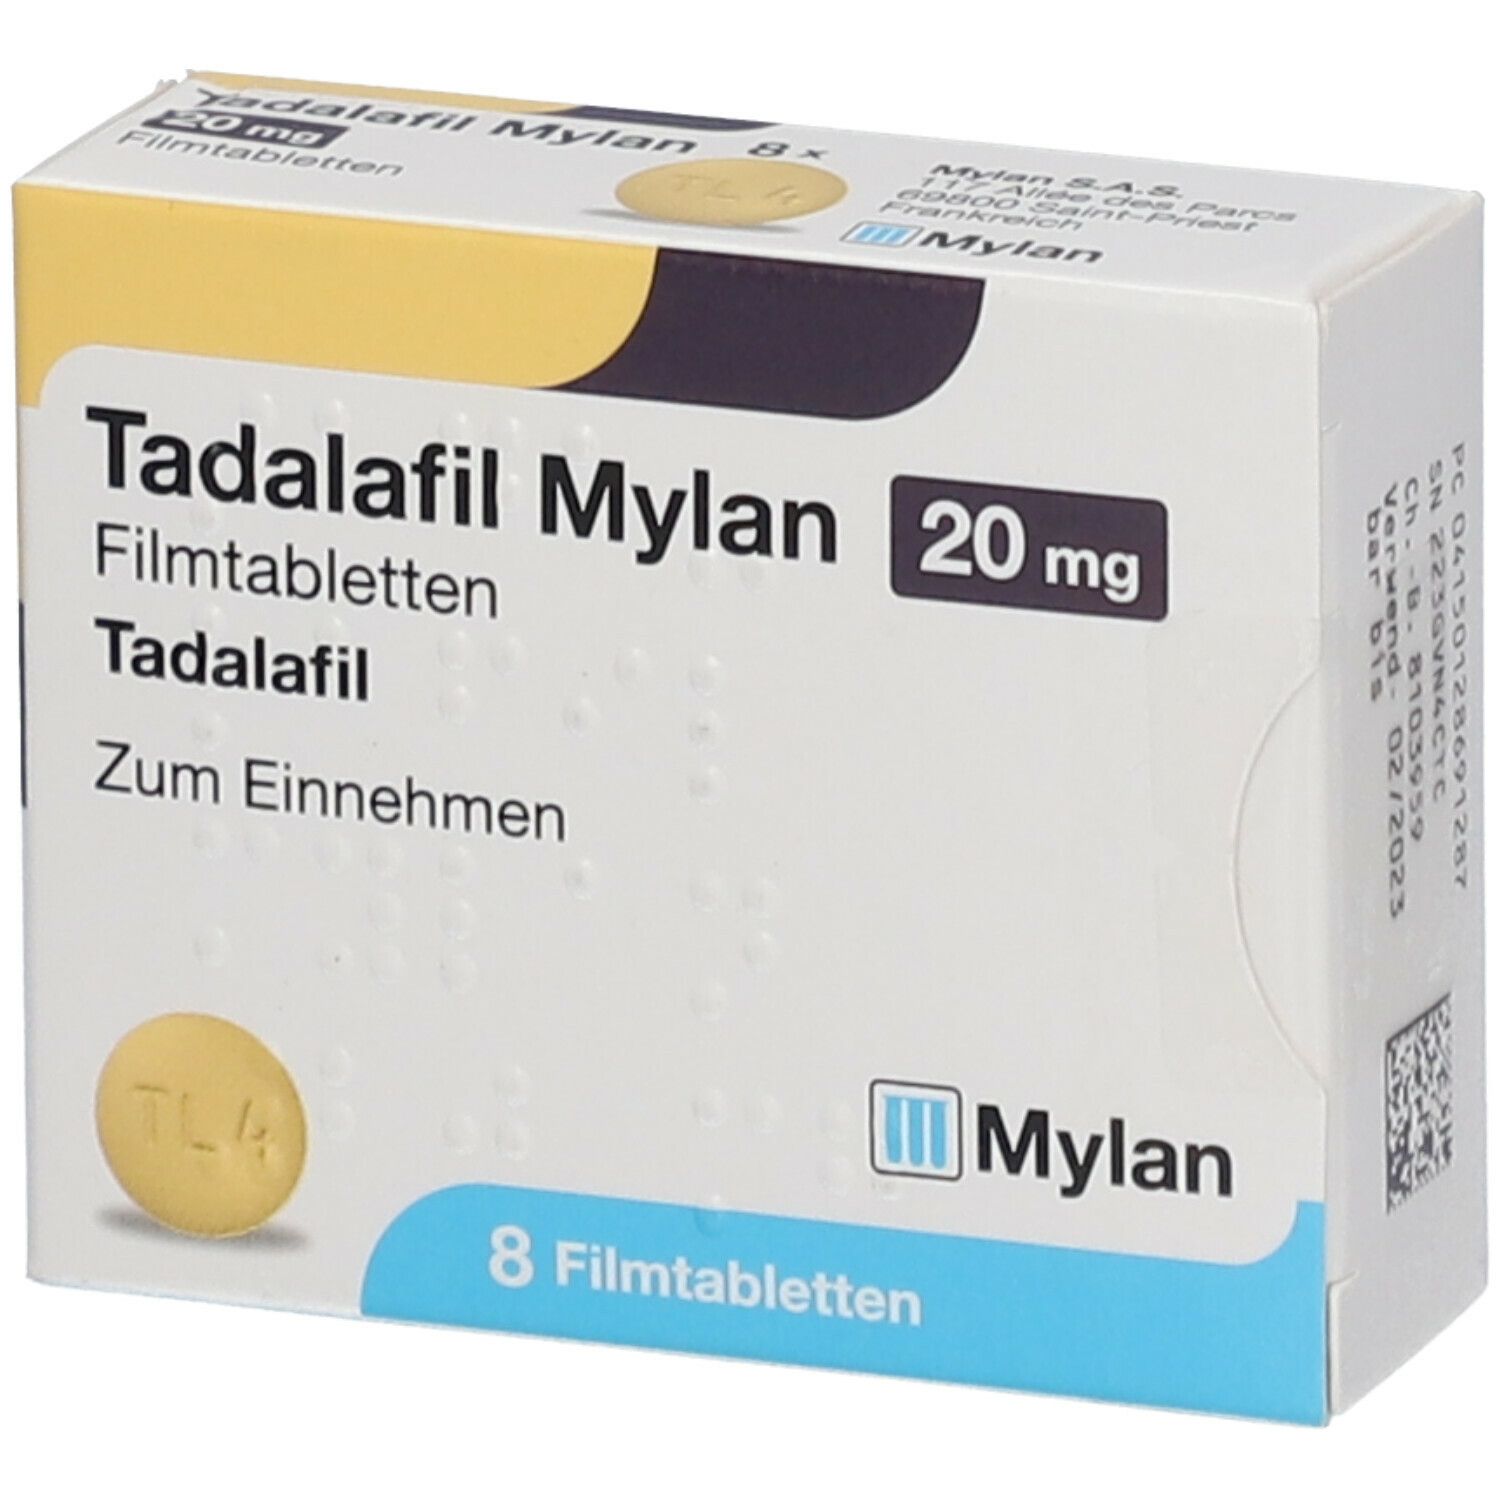 Ordinare online Sildenafil PAH Mylan Filmtabl 20 mg 90 Stk su ricetta